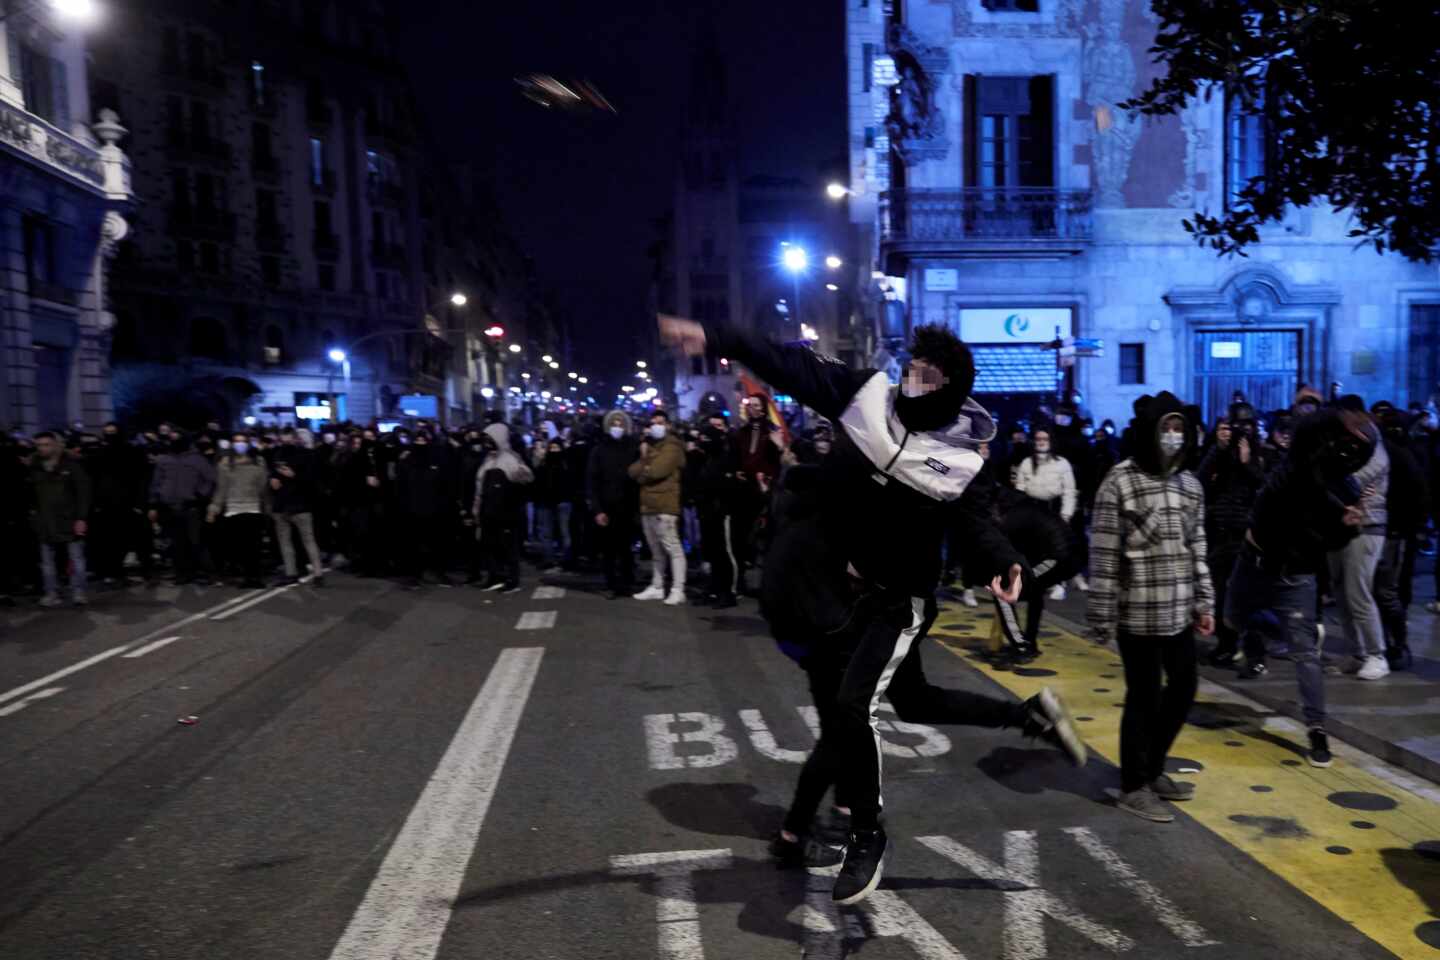 Manifestantes lanzan objetos esta noche frente a la comisaría de Vía Layetana, en el centro de Barcelona, en una nueva manifestación por la libertad de Pablo Hasel, después de cinco días consecutivos de protestas que han finalizado con enfrentamientos con los Mossos d'Esquadra y daños a bienes públicos y privado.